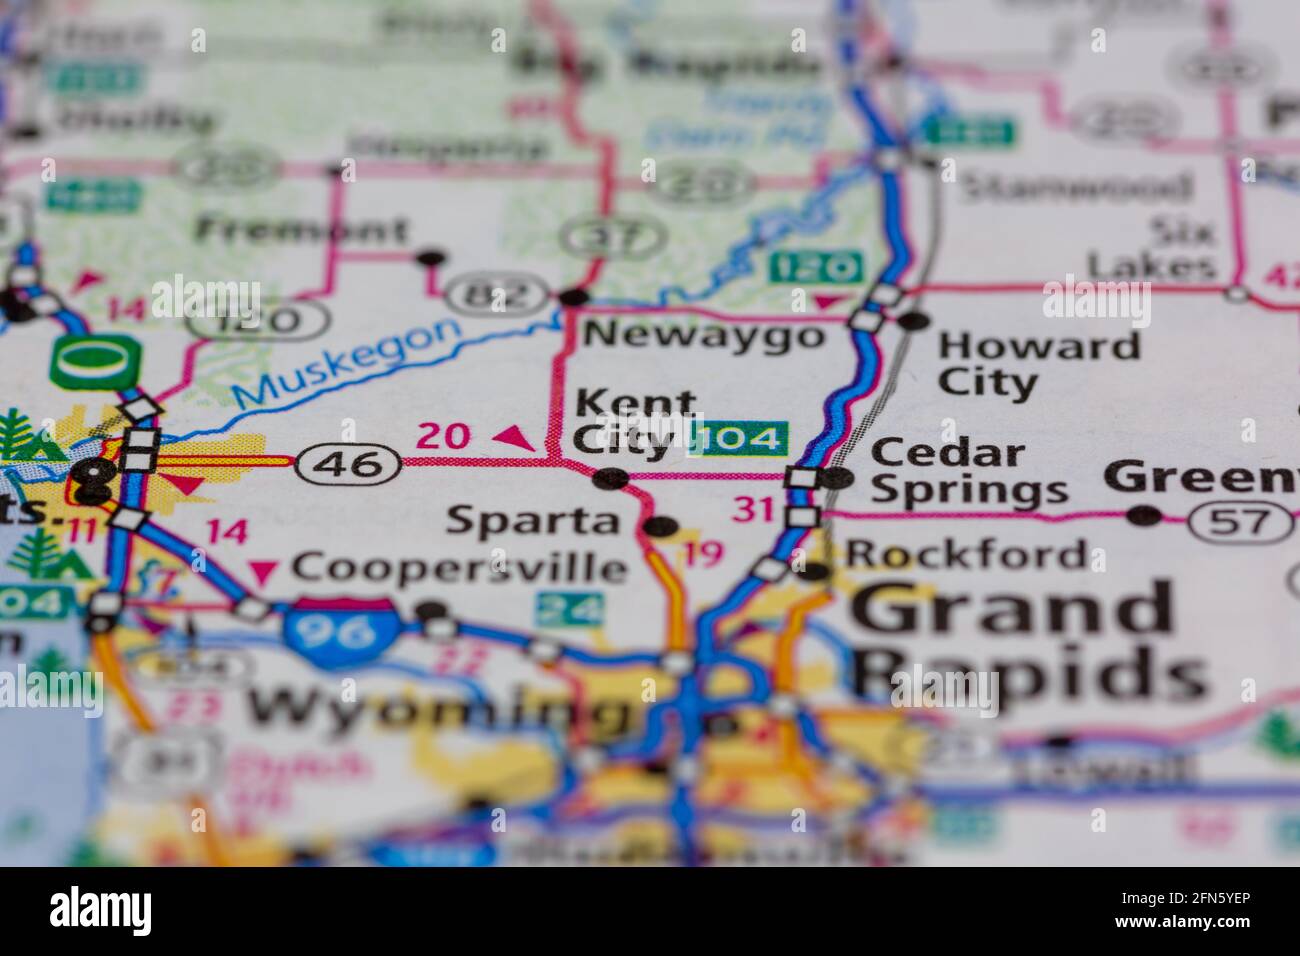 Kent City Michigan USA mostrato su una mappa geografica o. mappa stradale Foto Stock